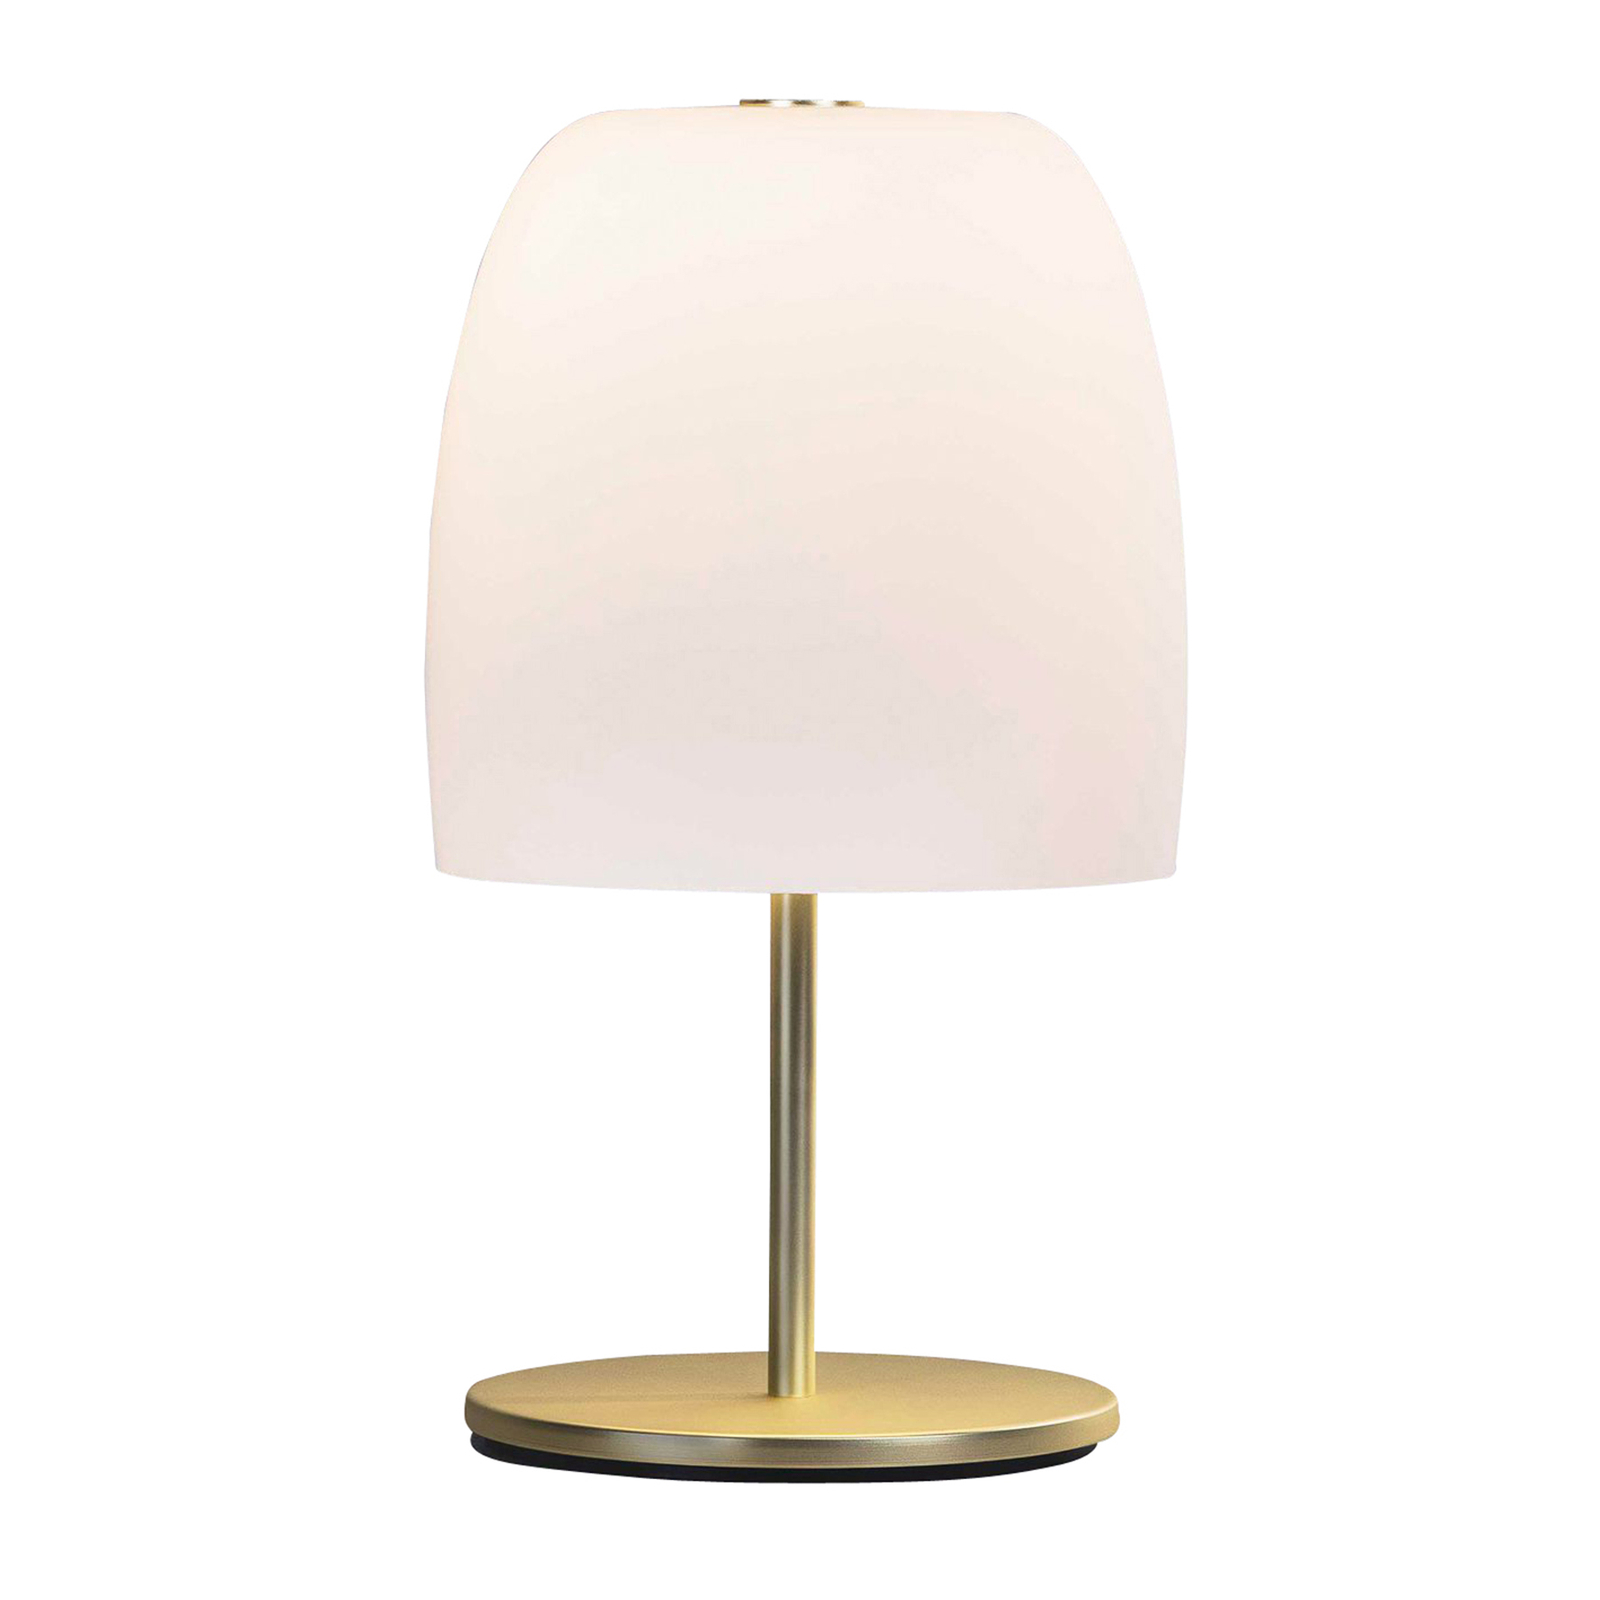 Prandina Notte T1 stolní lampa, mosaz/bílá